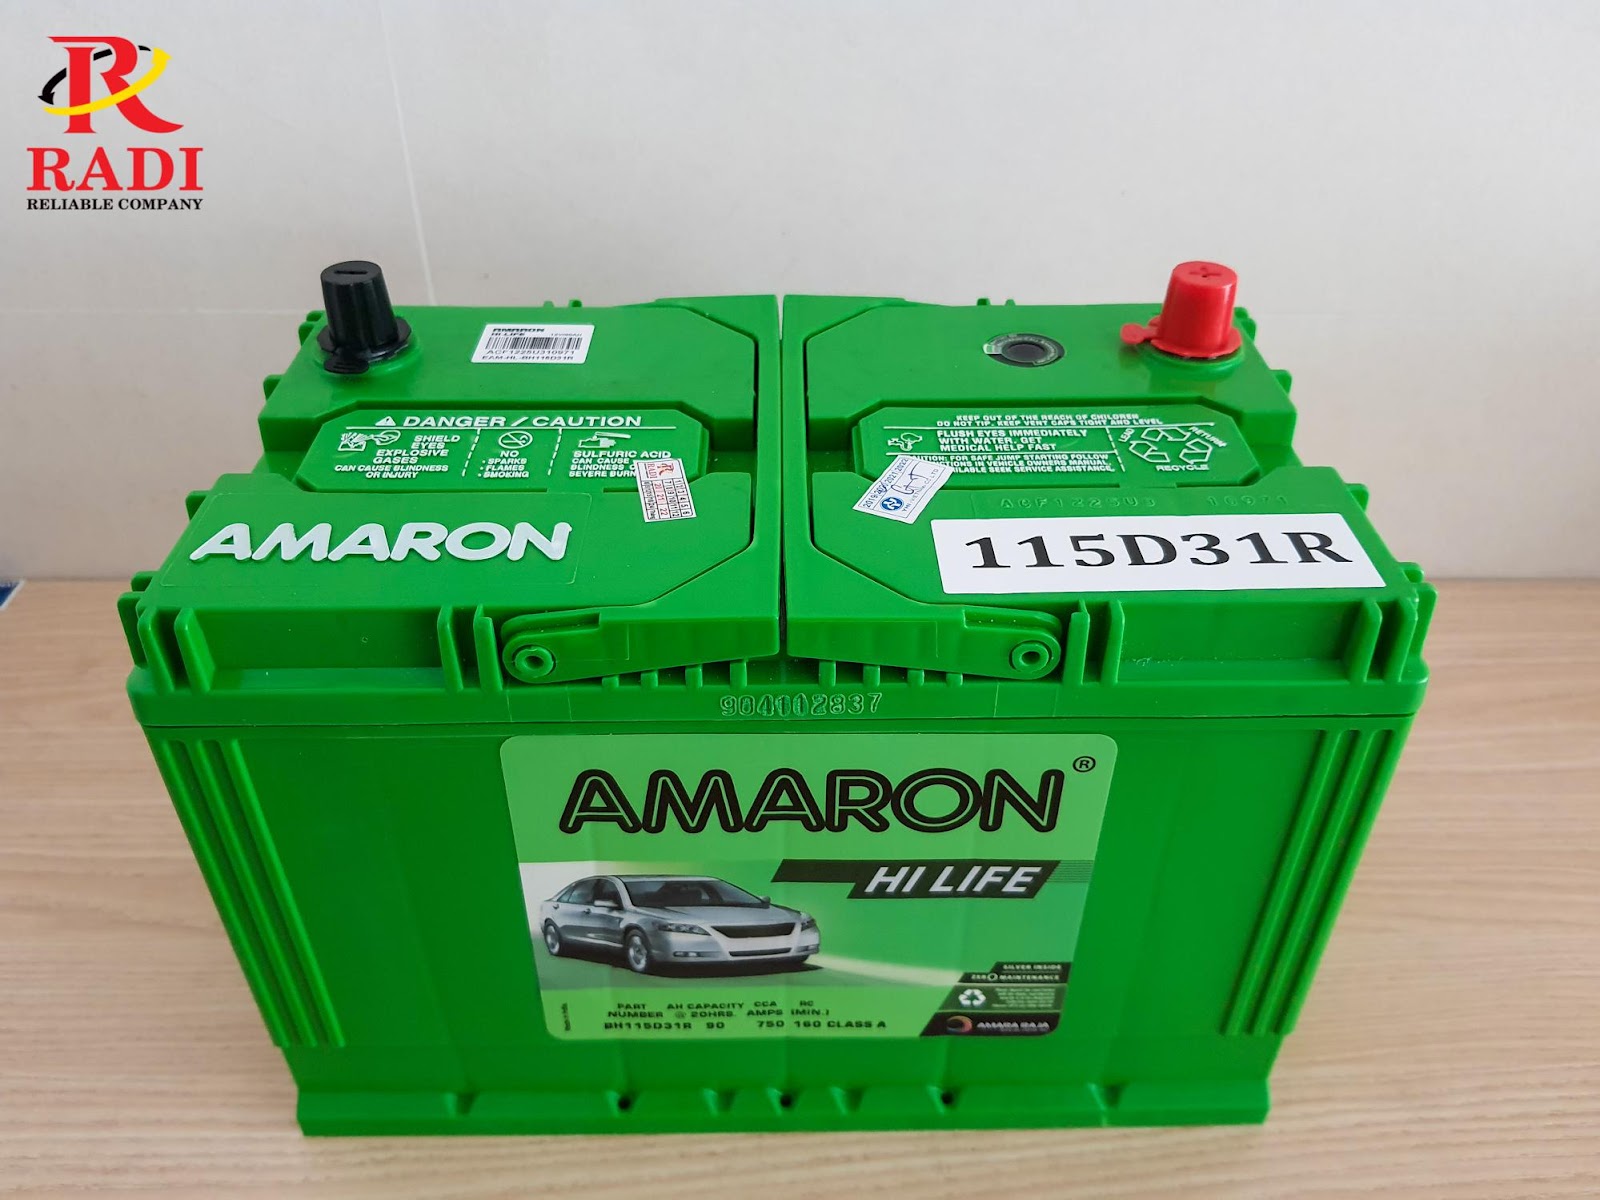 Ắc quy Amaron 115D31R (12V-90Ah) cho xe Hyundai Starex máy dầu